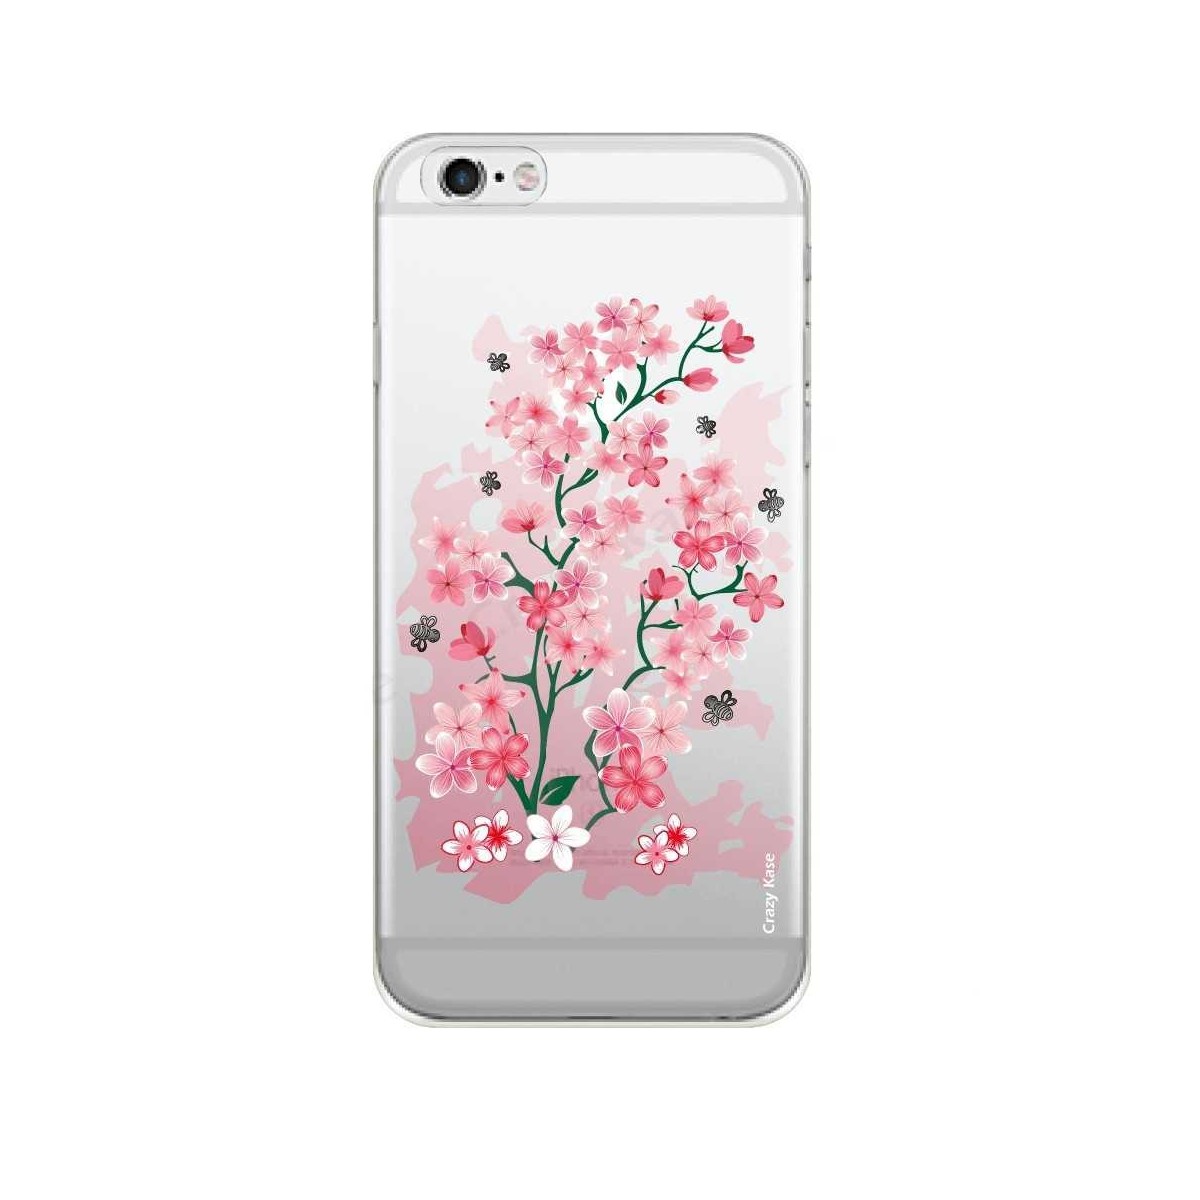 Coque iPhone 6 Plus / 6s Plus Transparente souple motif Fleurs de Cerisier - Crazy Kase